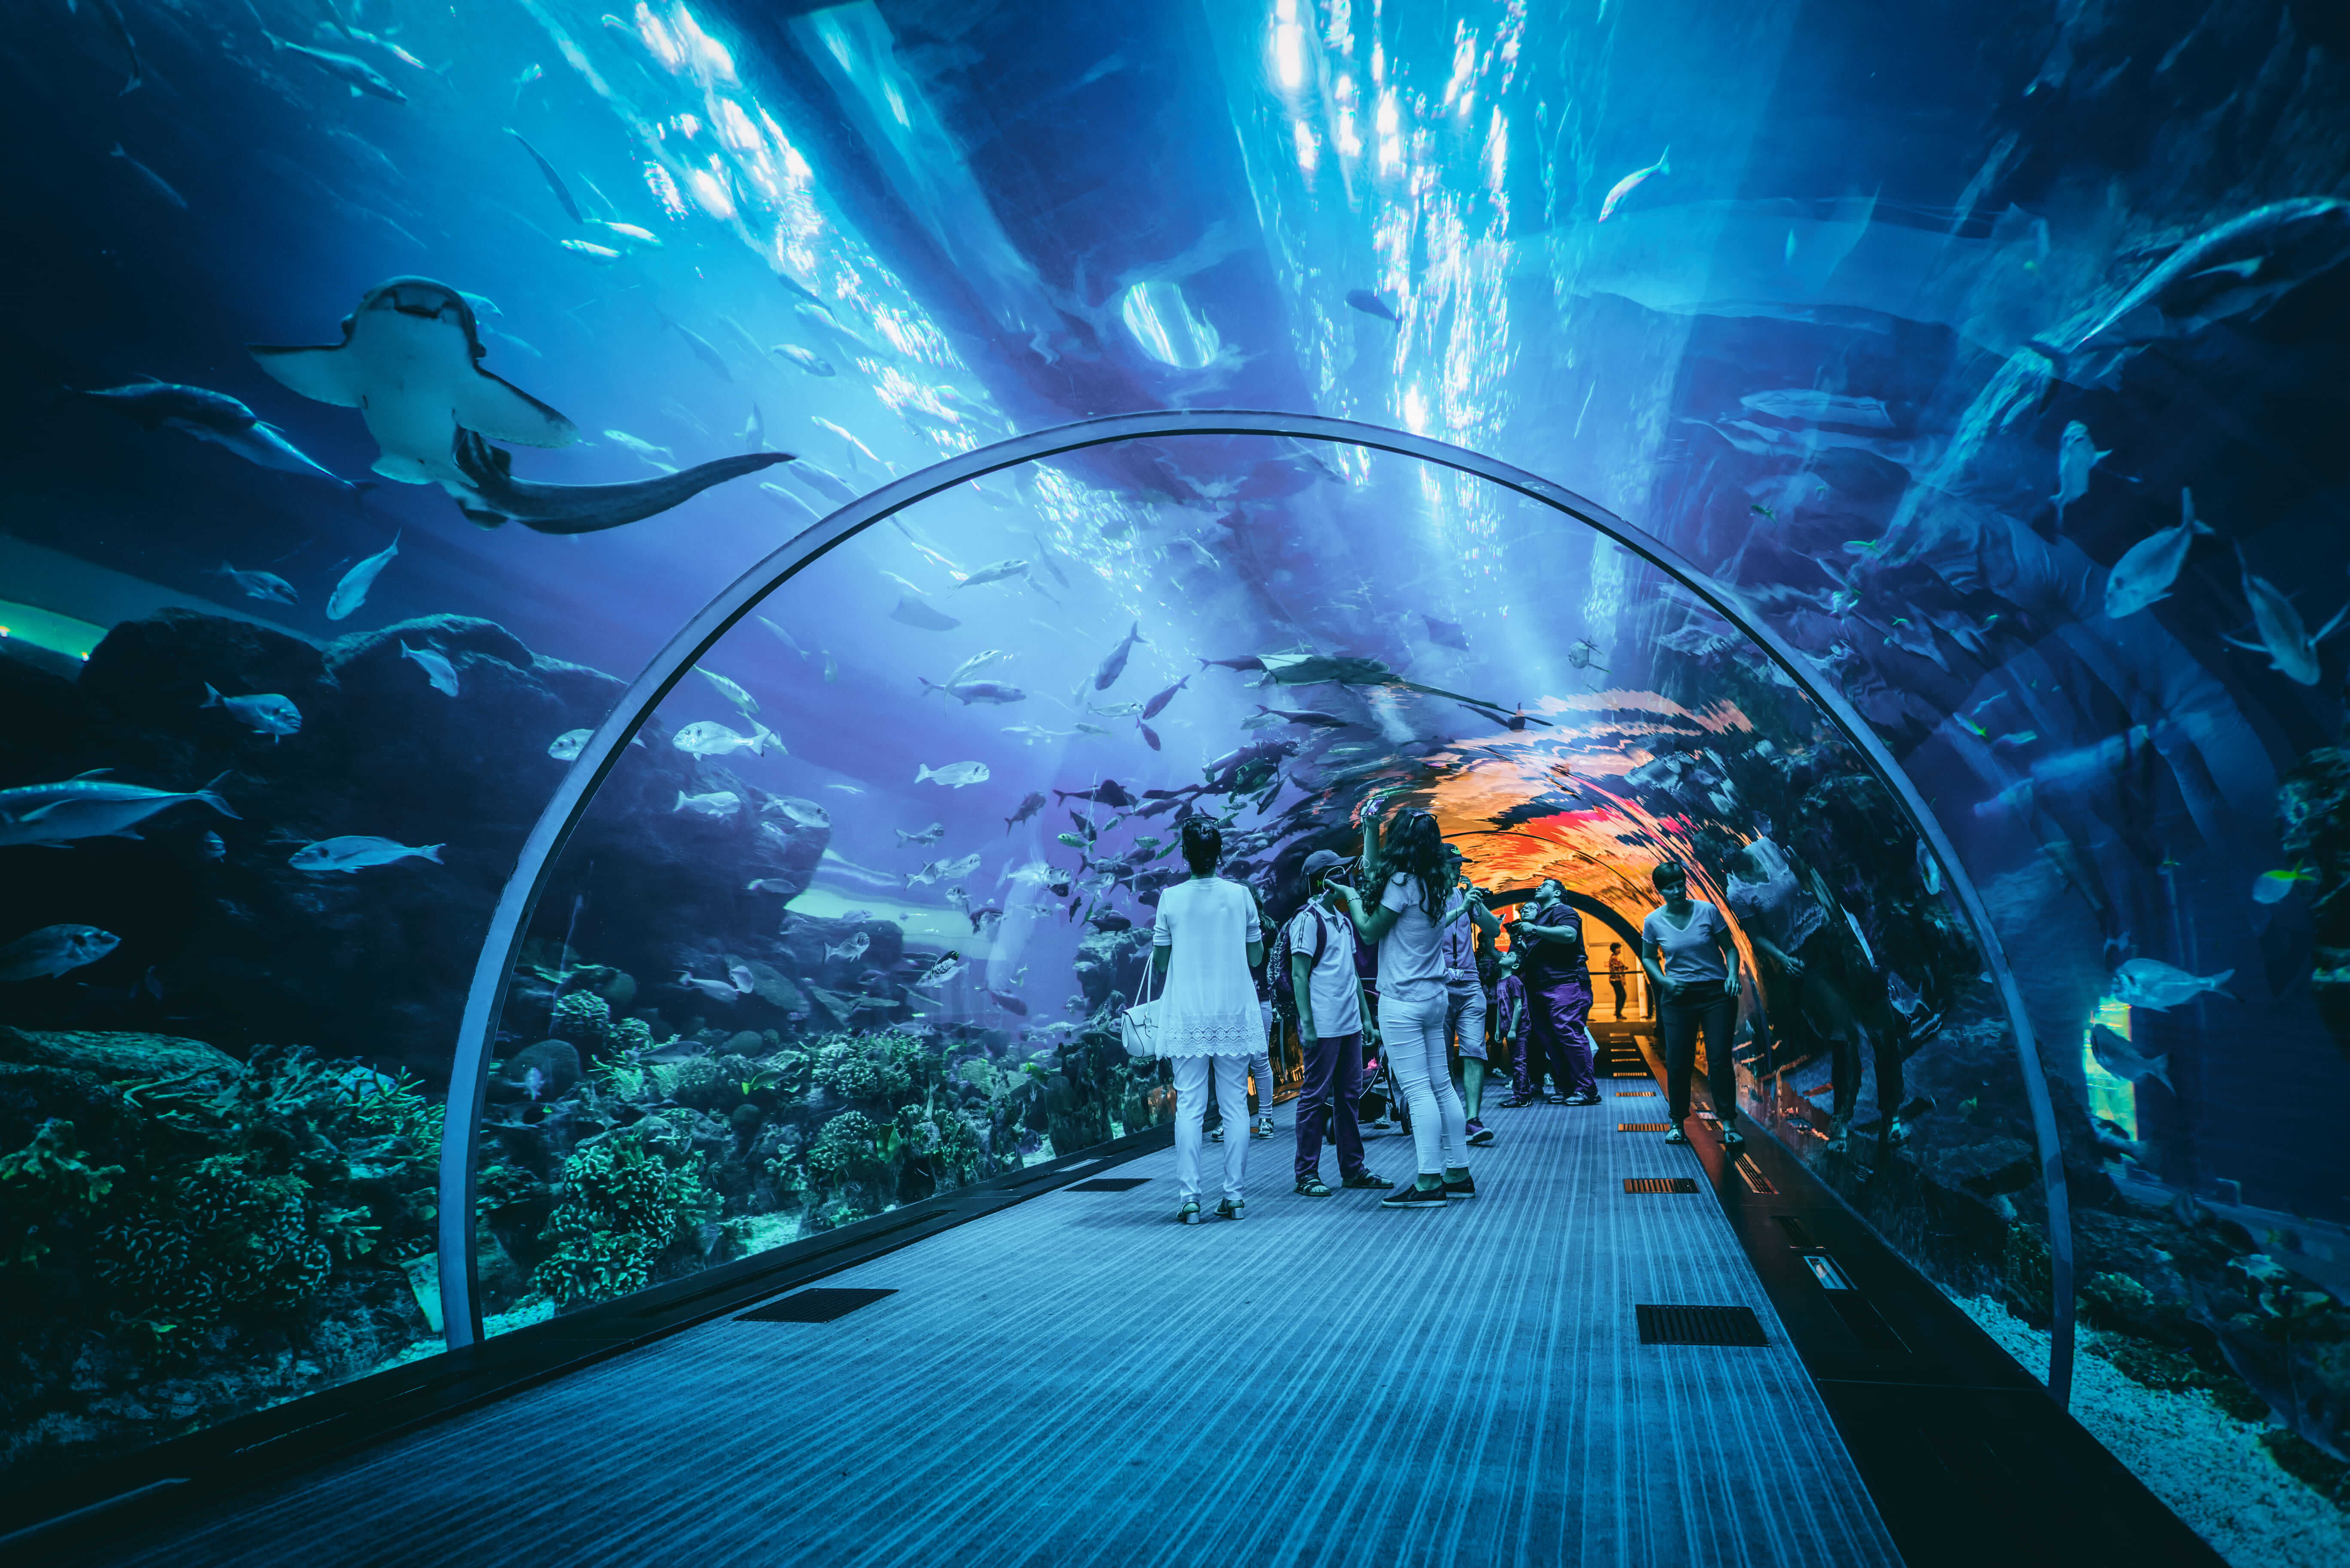 Visit Dubai Aquarium Underwater Zoo Plus Burj Khalifa On An Exciting Combo Tour! - Travel Fube